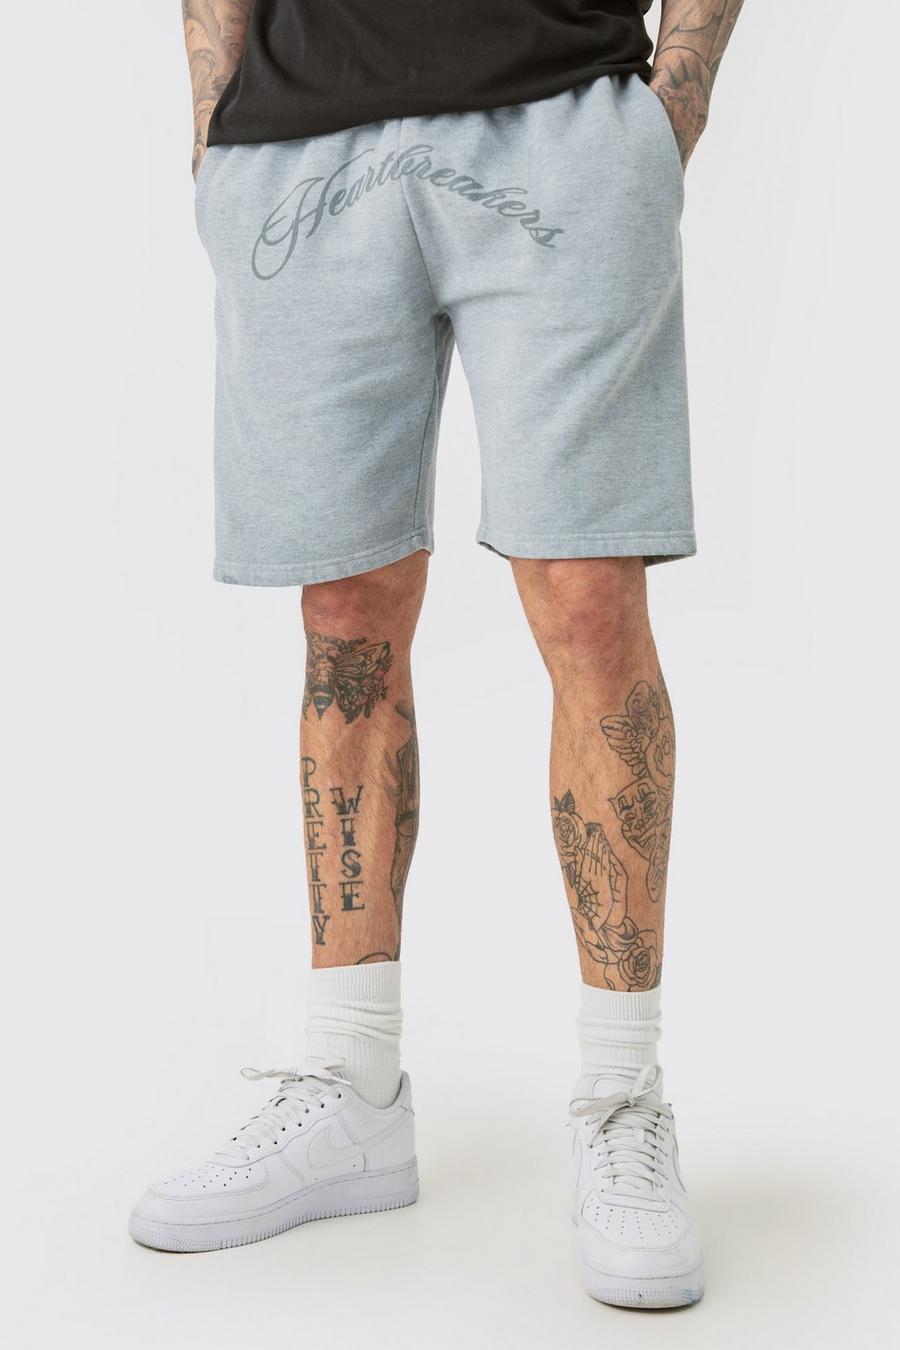 Pantalones cortos Tall oversize grises con estampado de Hearbreakers, Grey